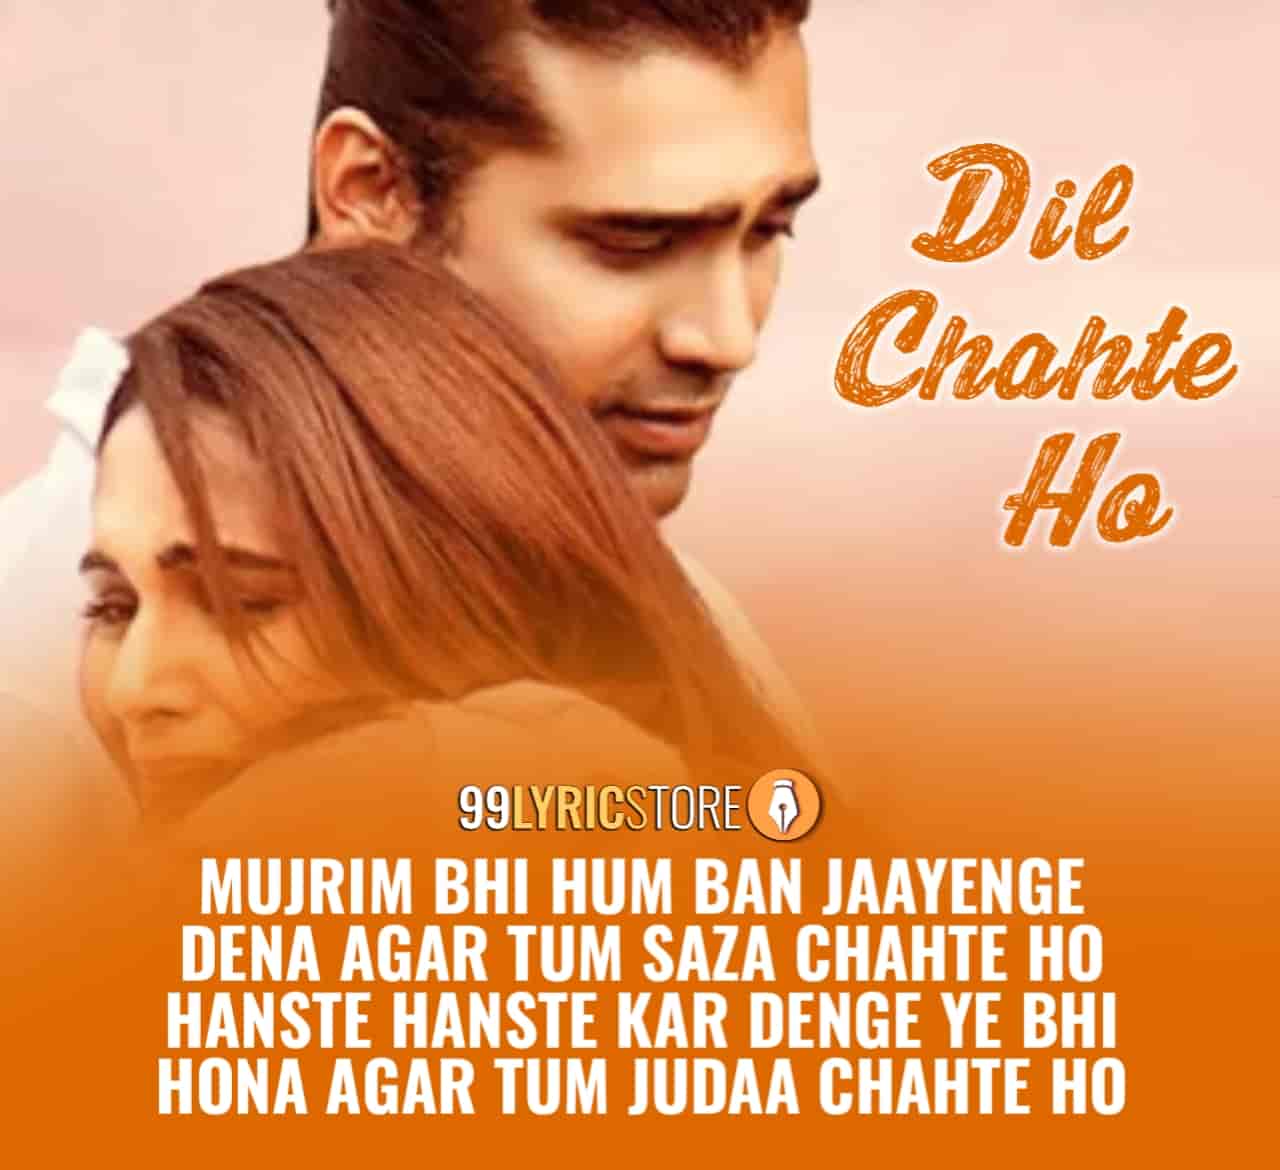 Dil Chahte Ho Hindi Song Image By Jubin Nautiyal and Payal Dev